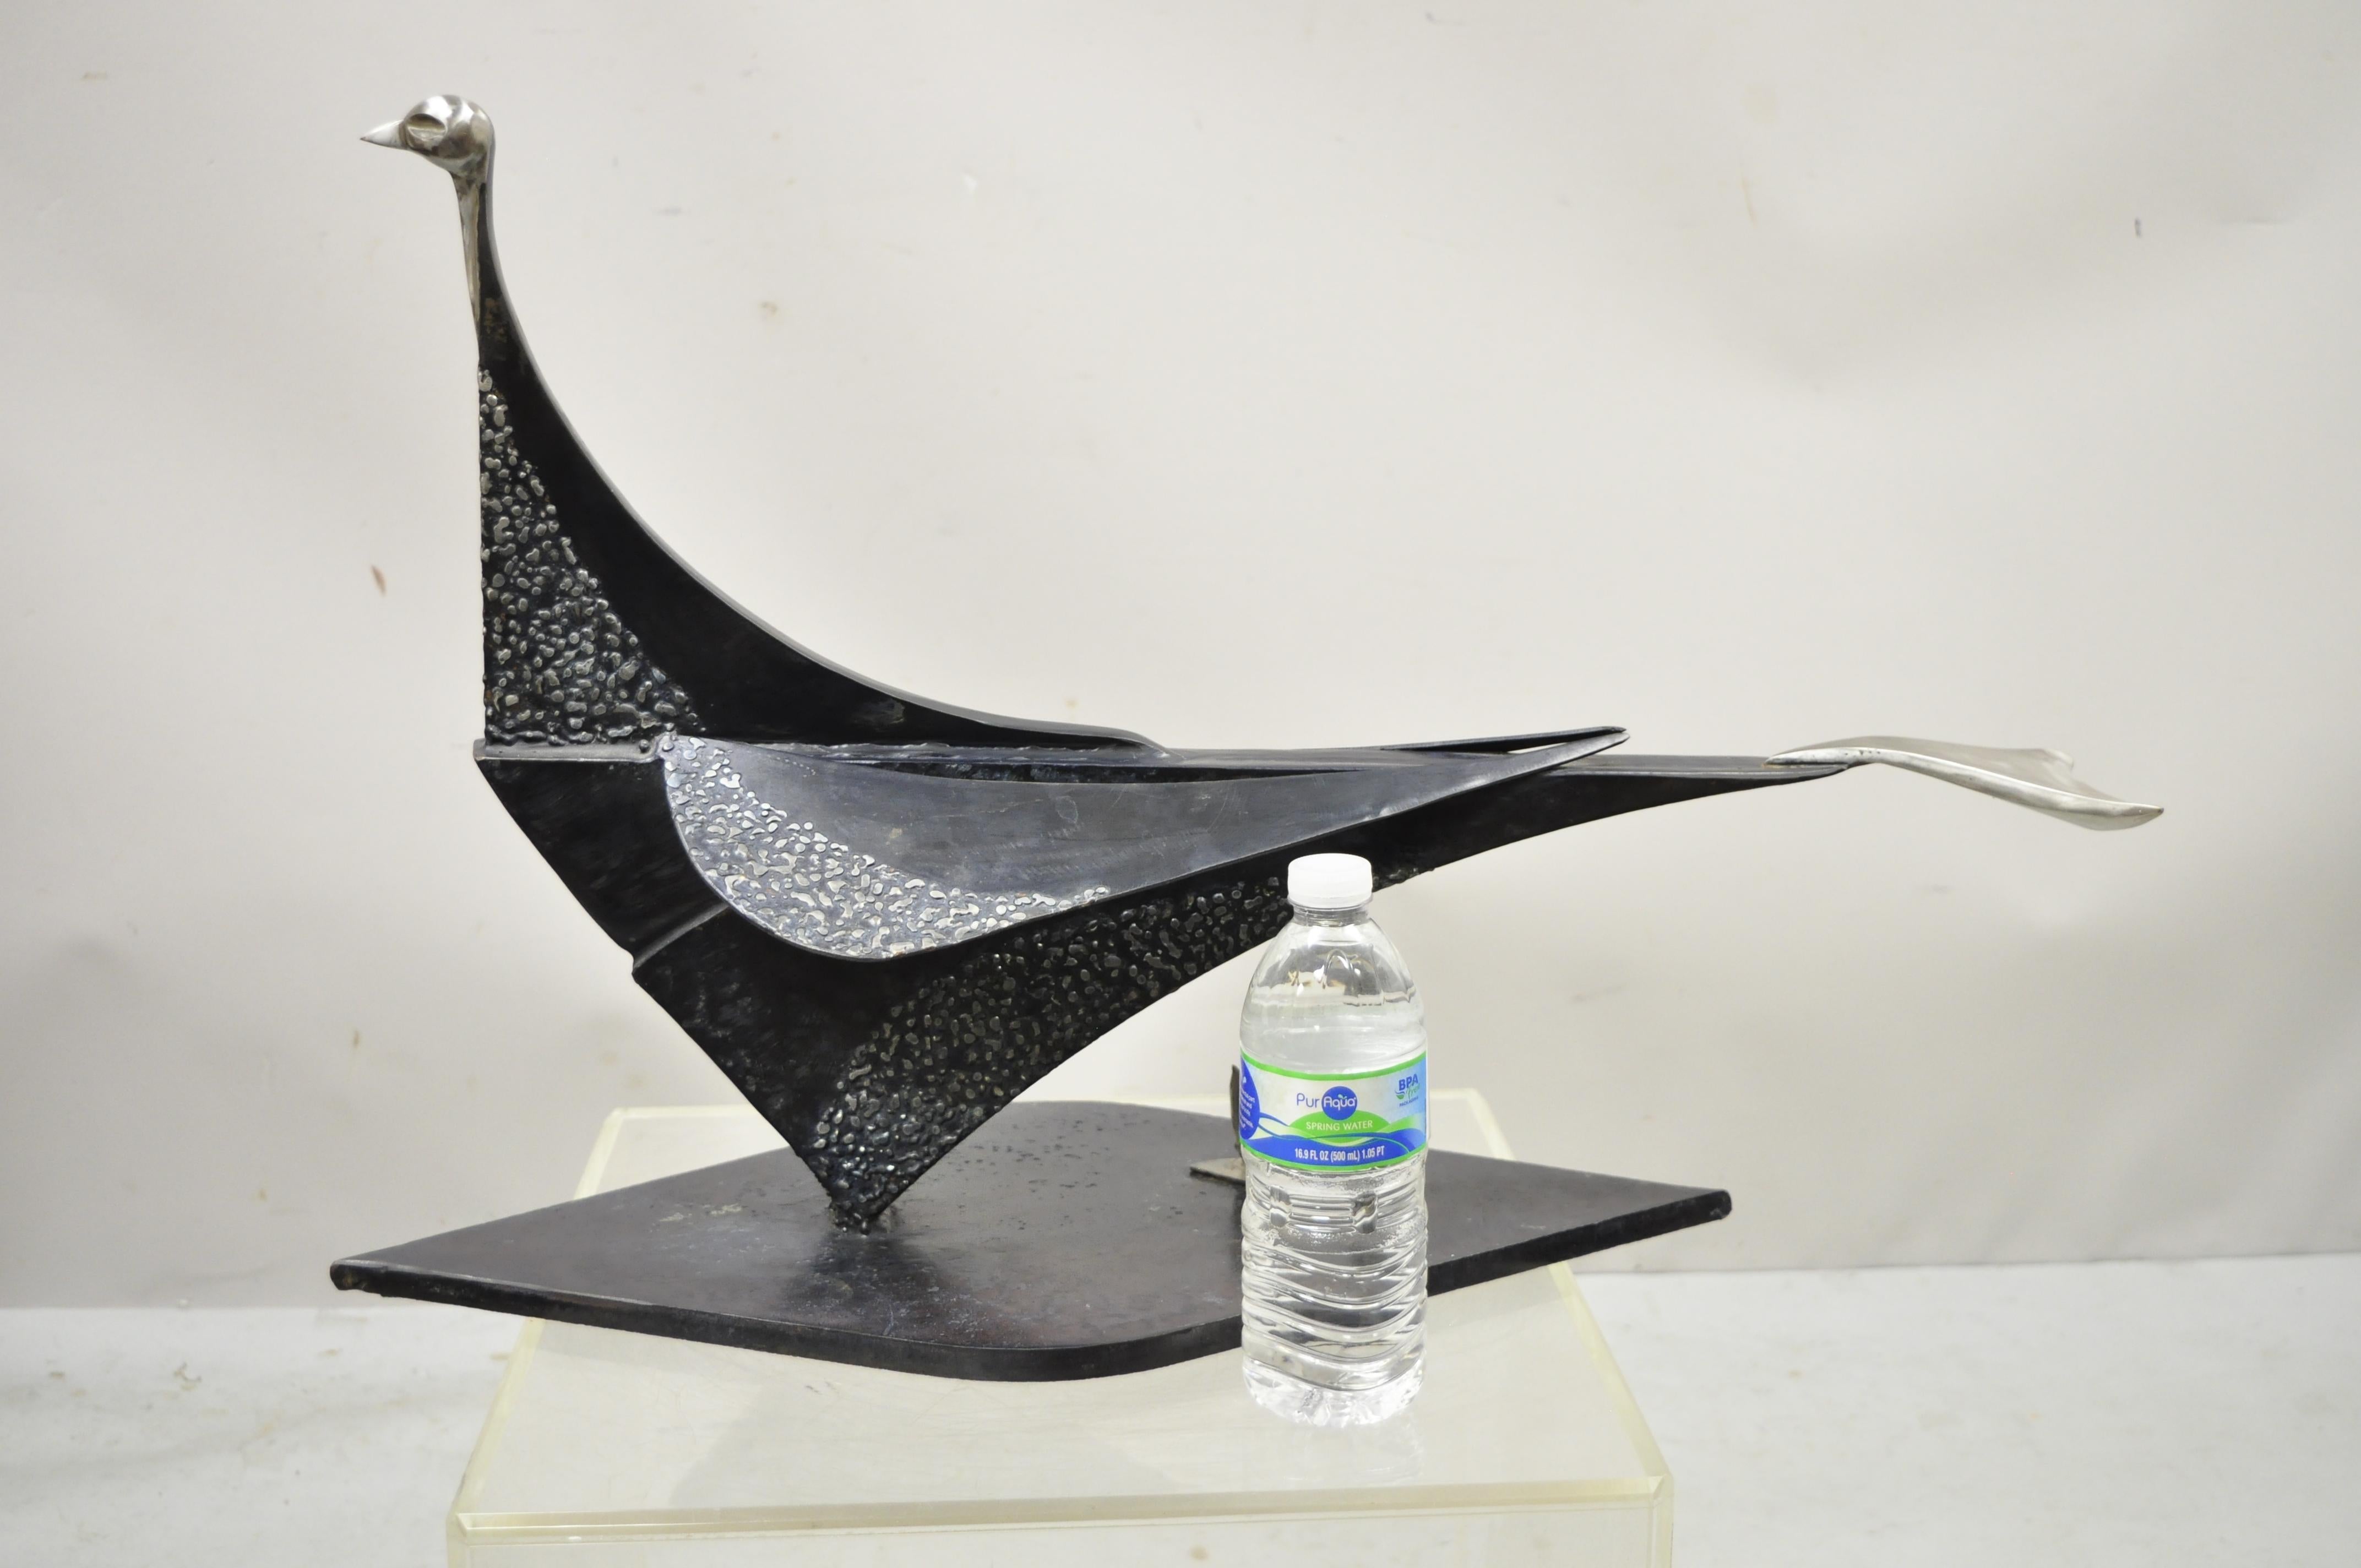 Moderne Stahl-Metall Brutalist große 28 Zoll Vogel Skulptur Künstler Metallarbeiten. Der Artikel zeichnet sich durch atemberaubende Metallarbeit und Qualität aus und wiegt etwa 50 Pfund. Unsigniert und Künstler unbekannt. Etwa Ende des 20.